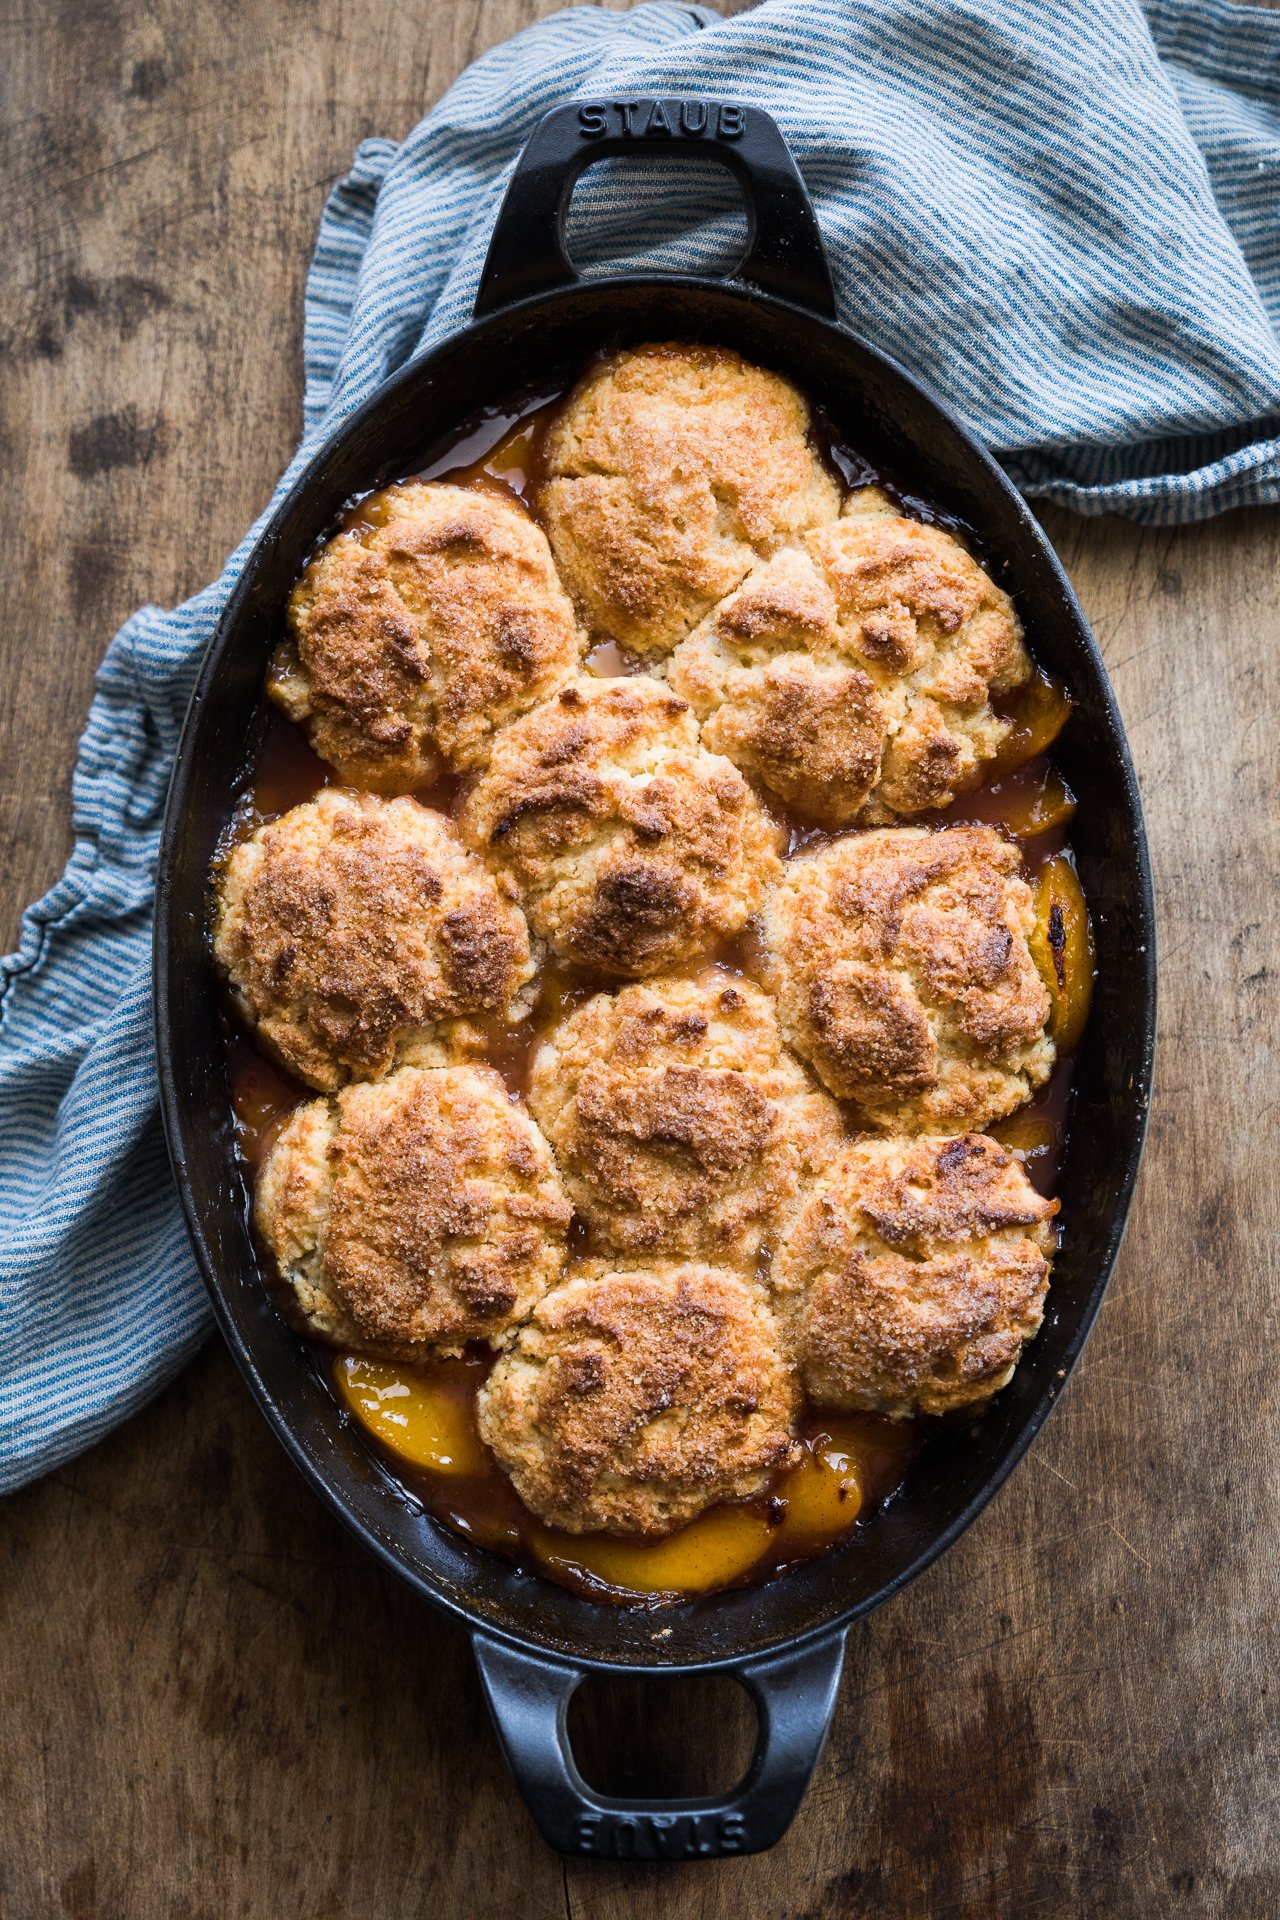 Peach Biscuit Cobbler | HonestlyYUM (honestlyyum.com) #recipes #baking #cobbler #peaches